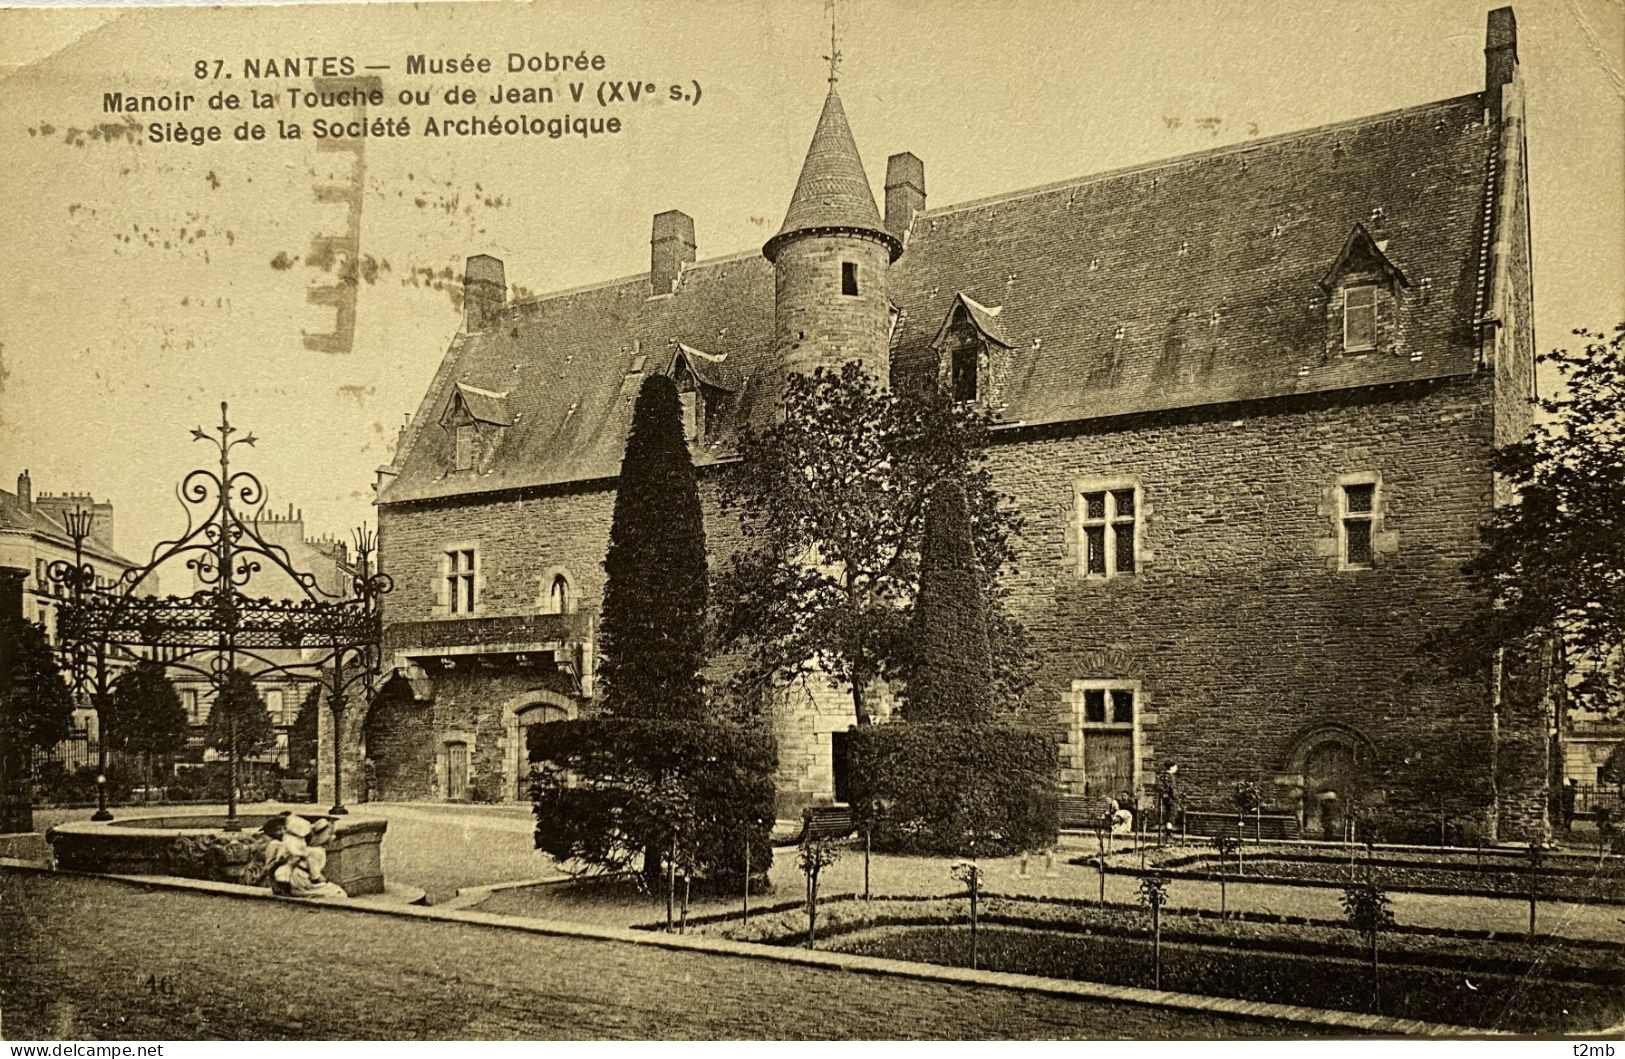 CPA (Loire Atlantique) NANTES - Musée Dobrée, Manoir De La Touche Ou De Jean V, Siège De La Société Archéologique - Nantes